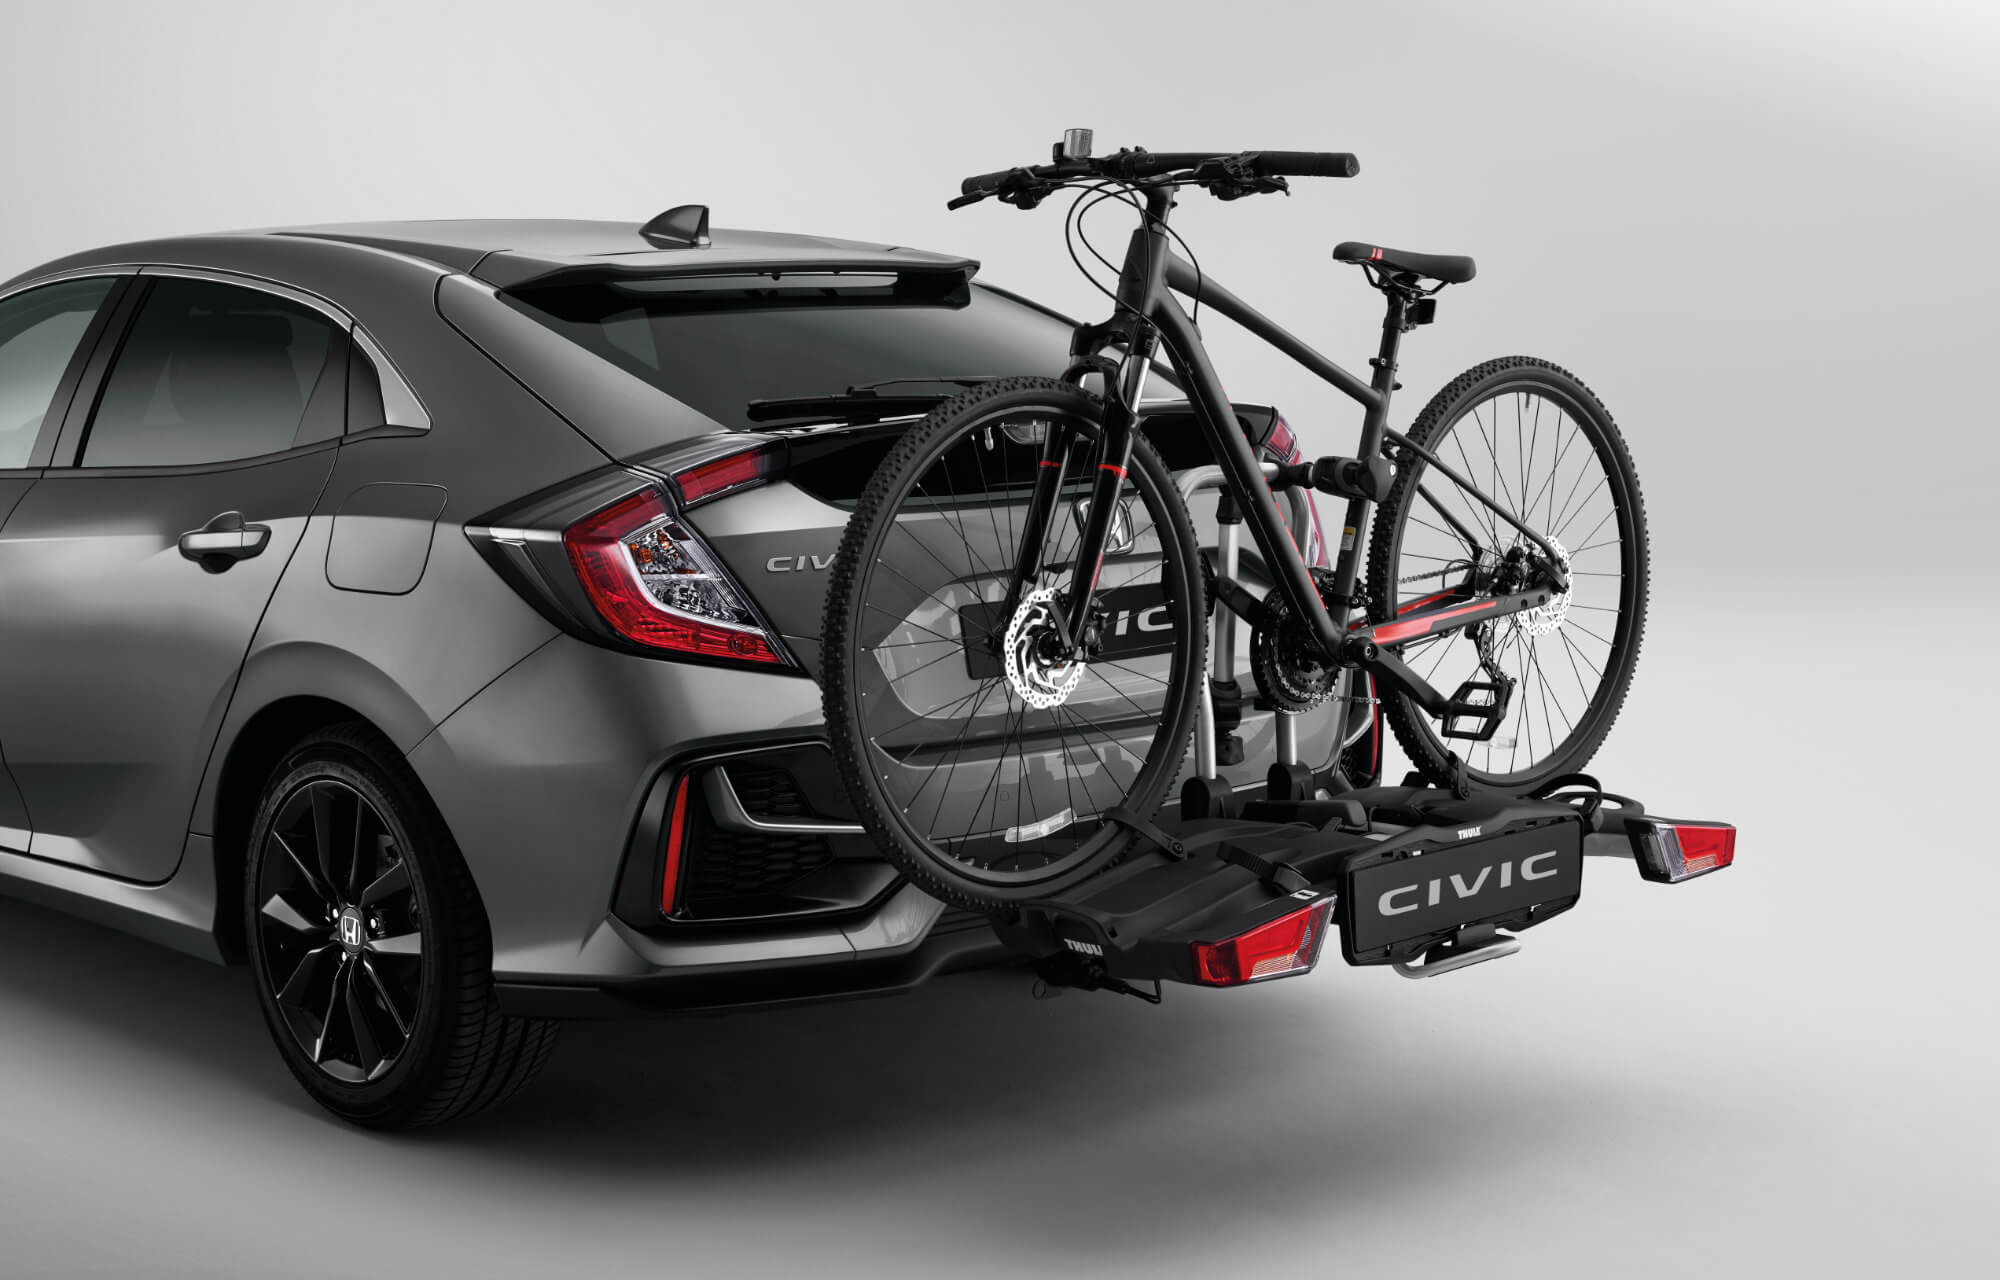 Honda Civic 5 Door Thule Bicycle Carrier - Easyfold